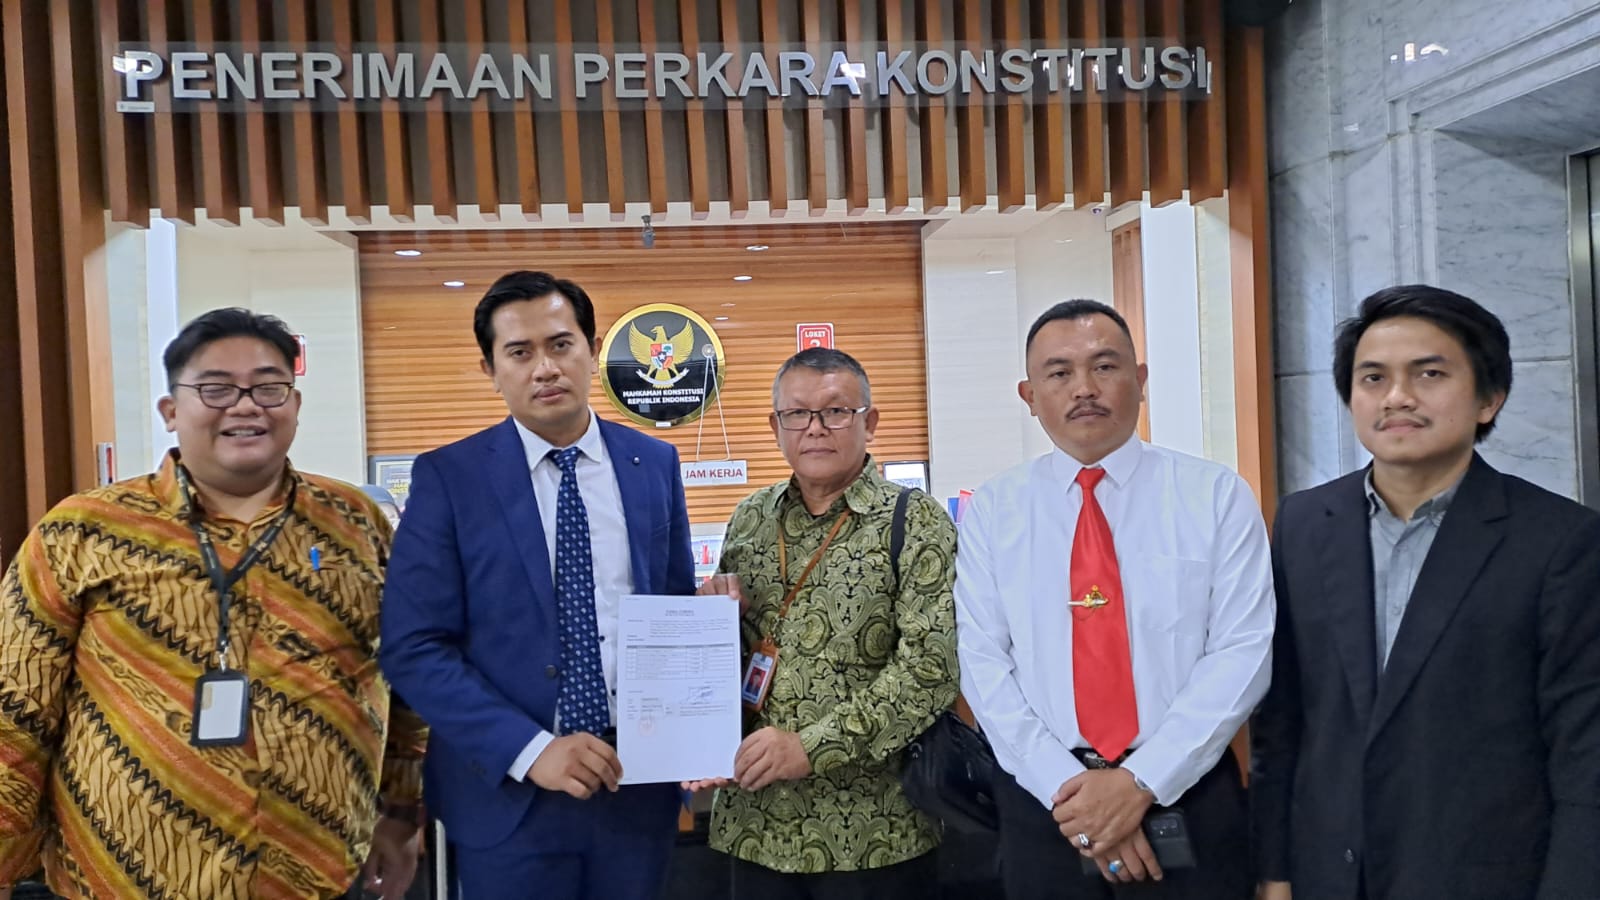 Polemik Tapal Batas, Pemkab Lebong Resmi Gugat UU Pemekaran Kabupaten ke MK